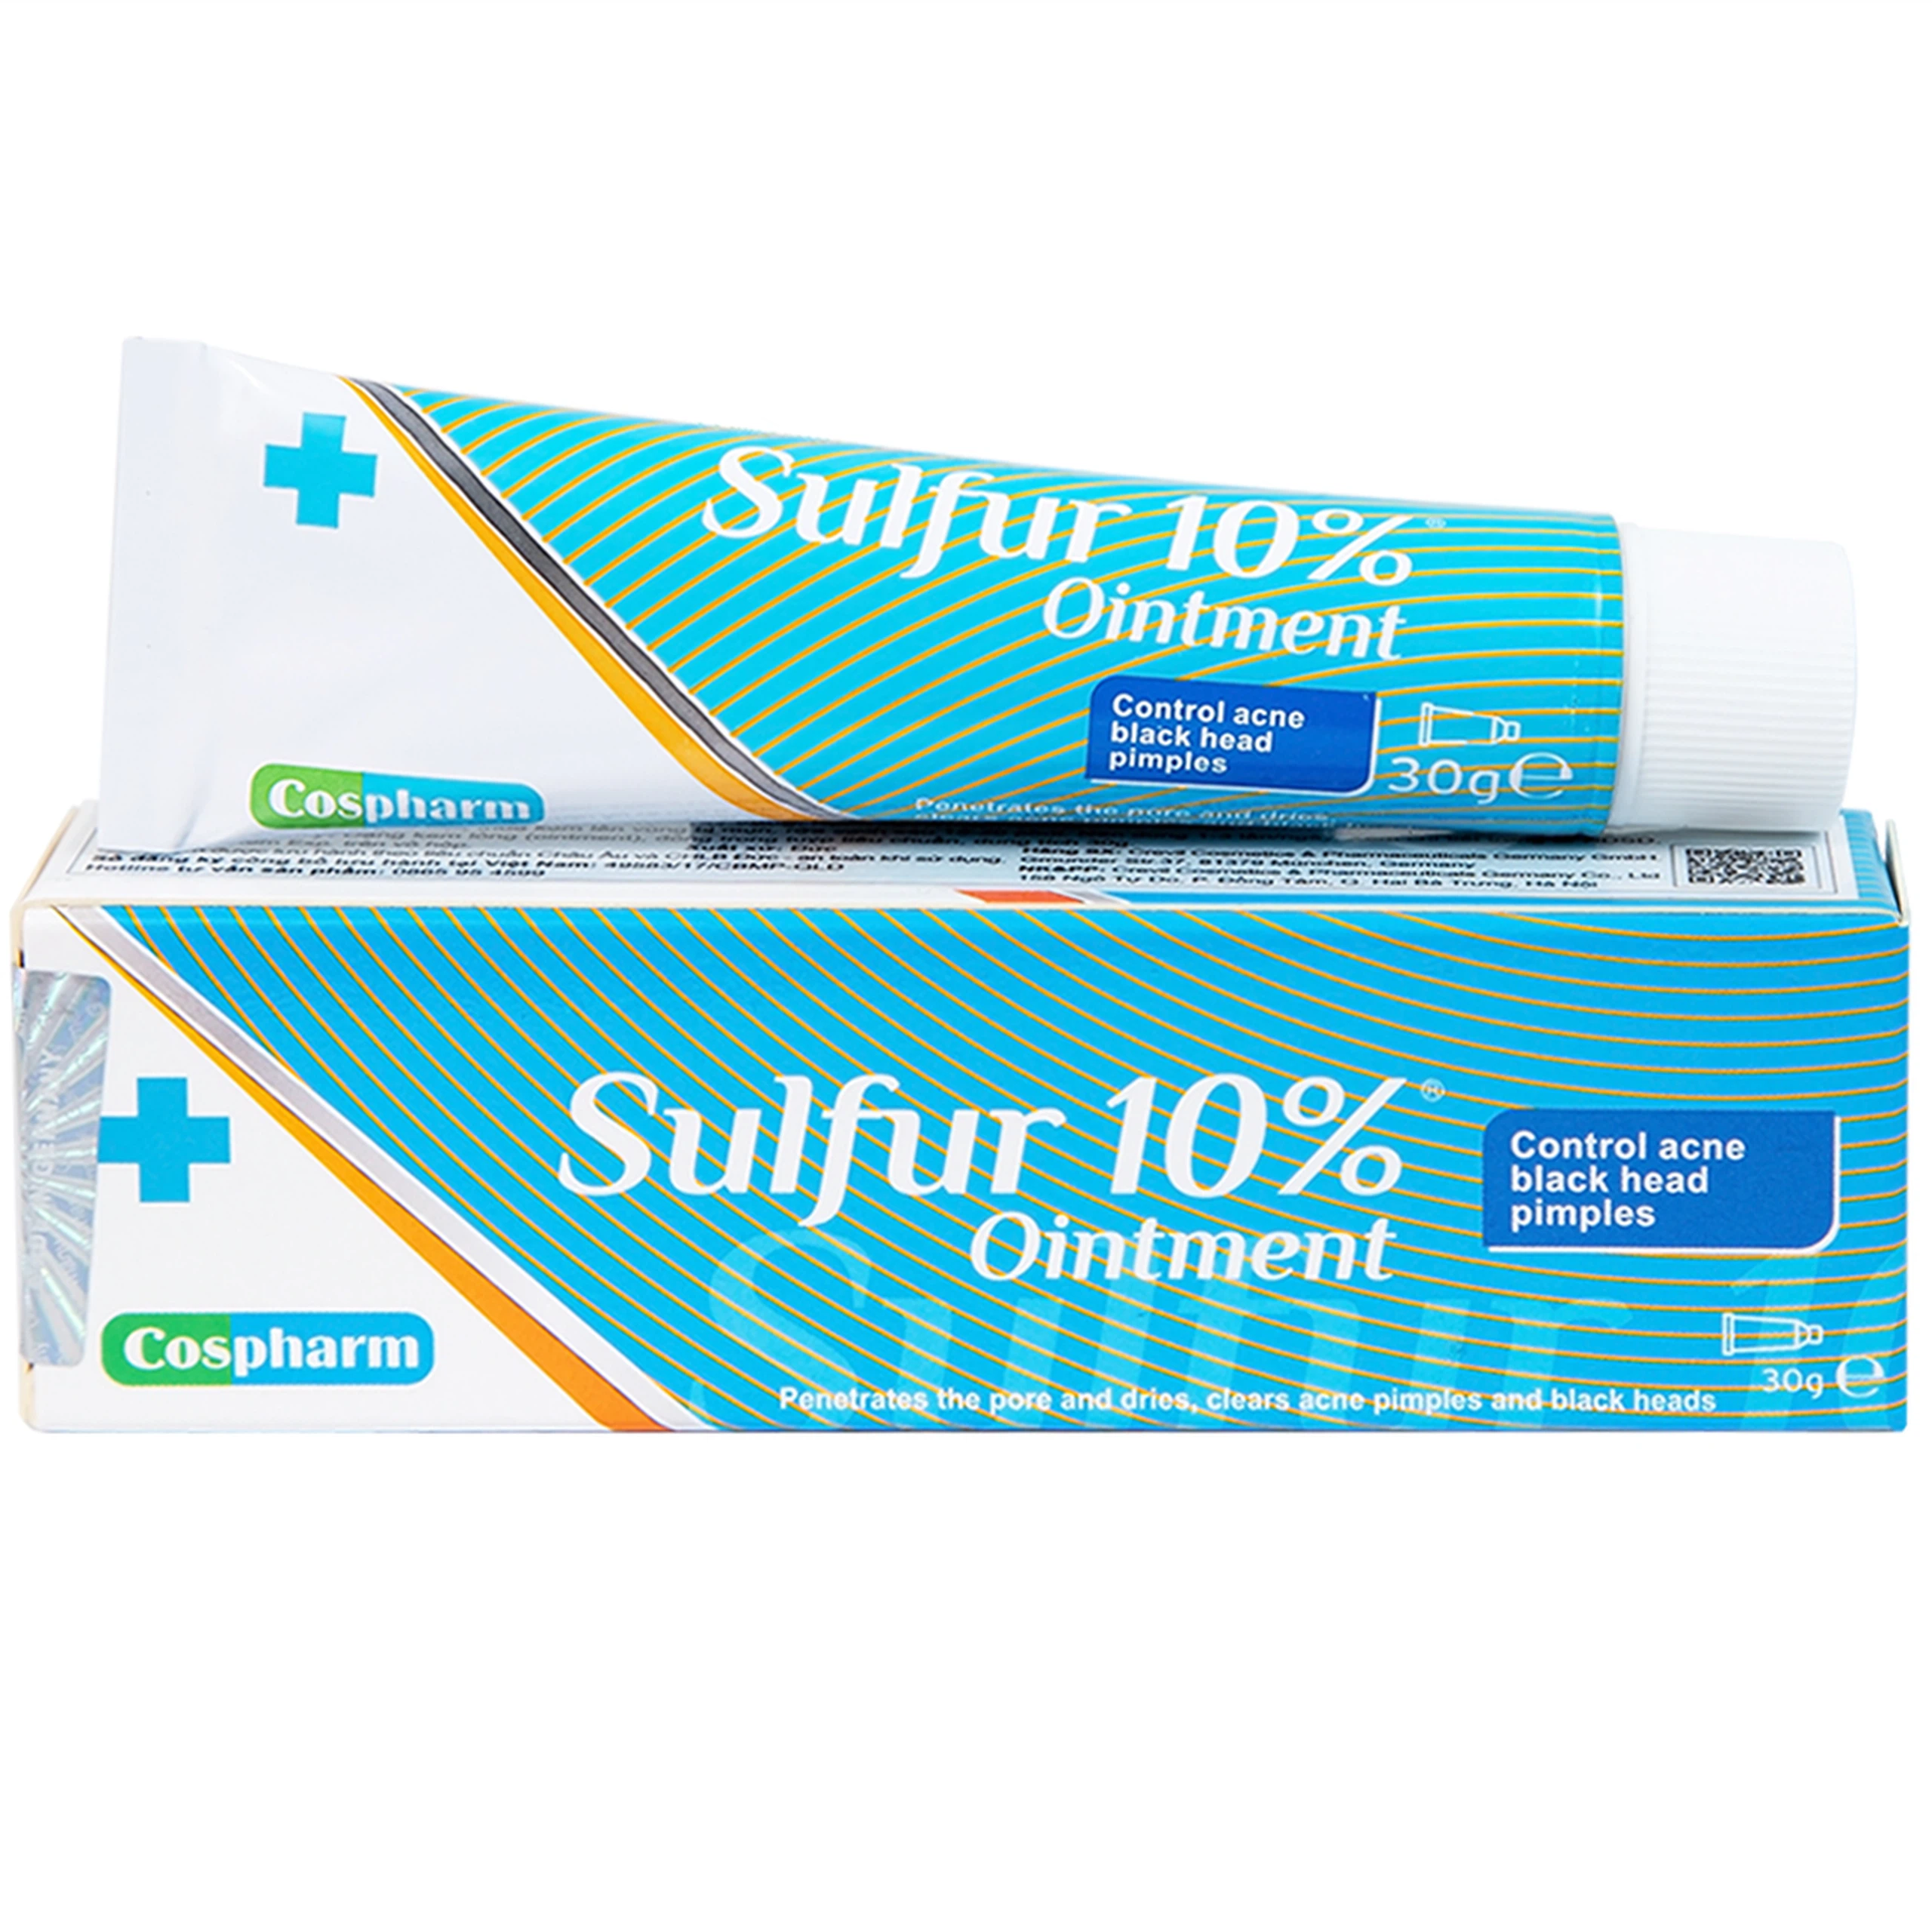 Kem mụn Sulfur 10% Ointment Cospharm ngăn ngừa mụn và chăm sóc da mặt (30g)